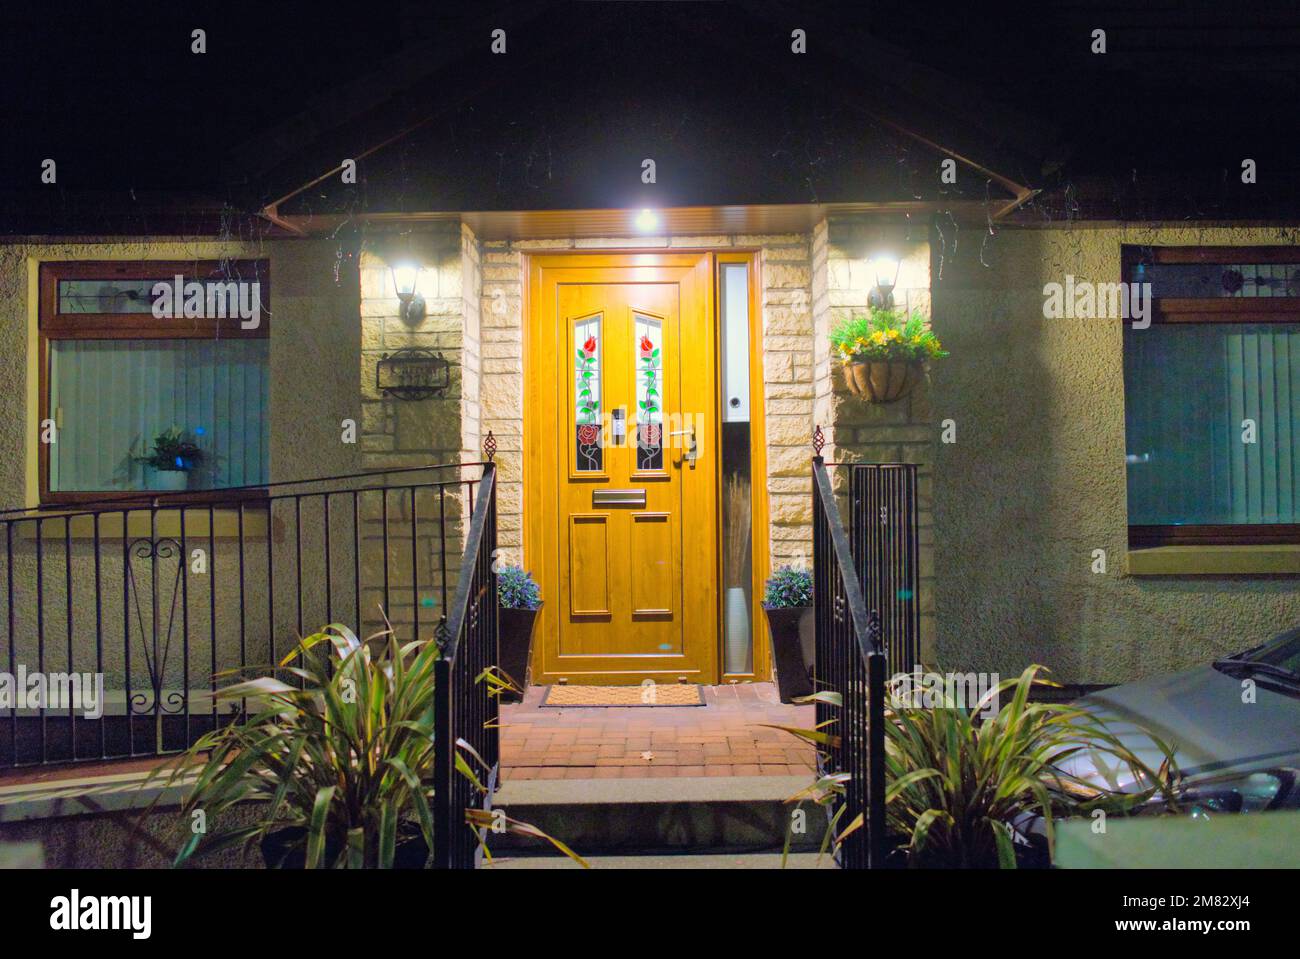 el porche de la puerta principal de los suburbios de clase media se iluminaba por la noche Foto de stock